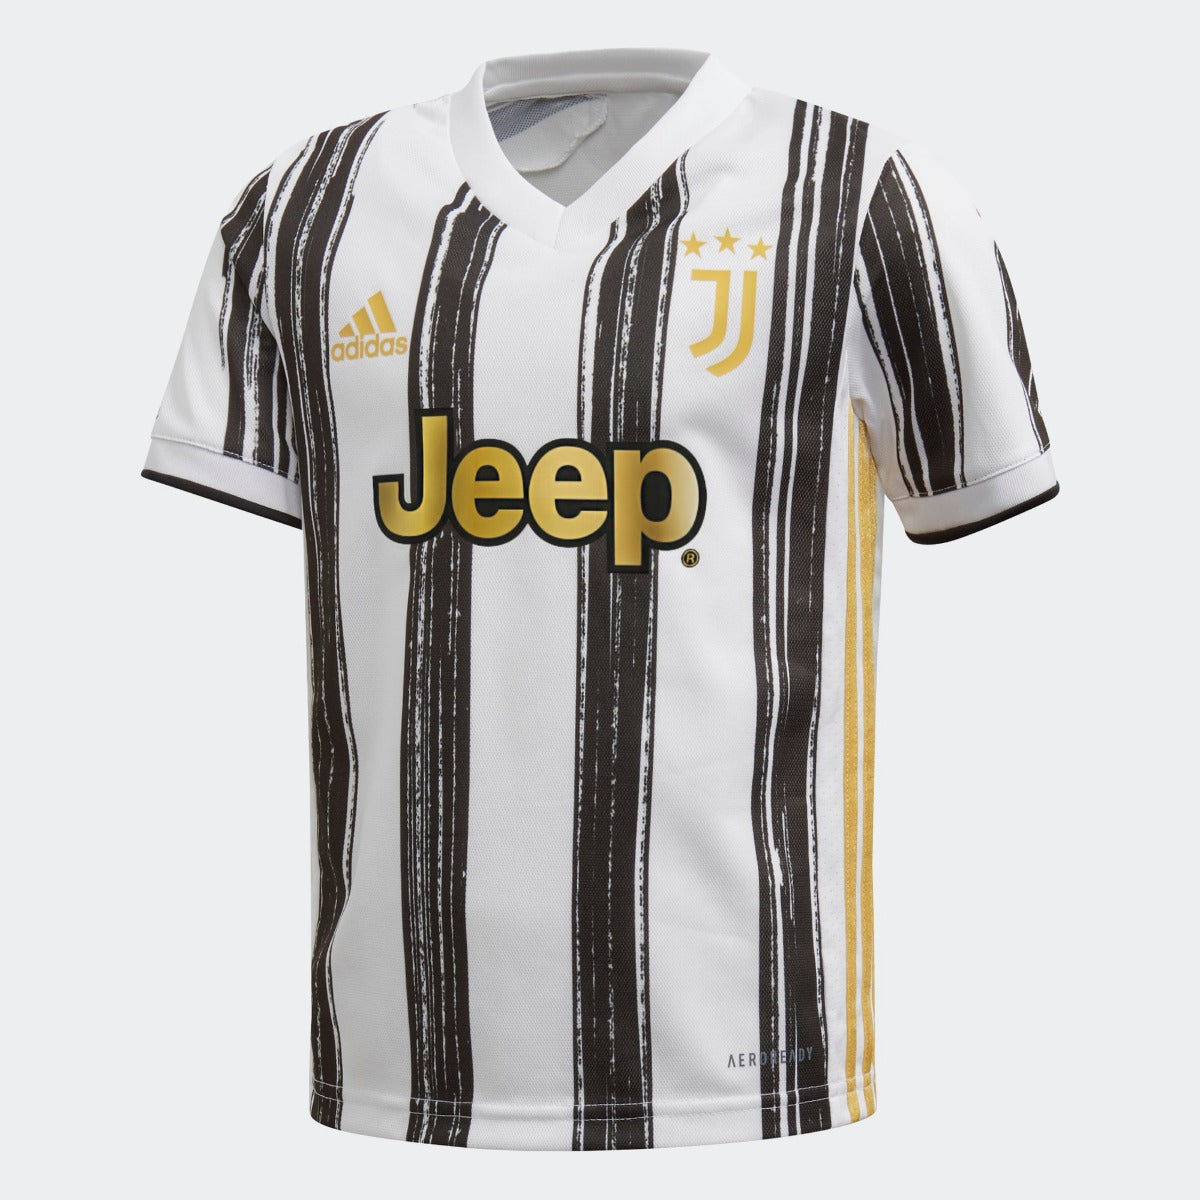 Adidas 2020-21 Juventus Home Baby Set - White-Black